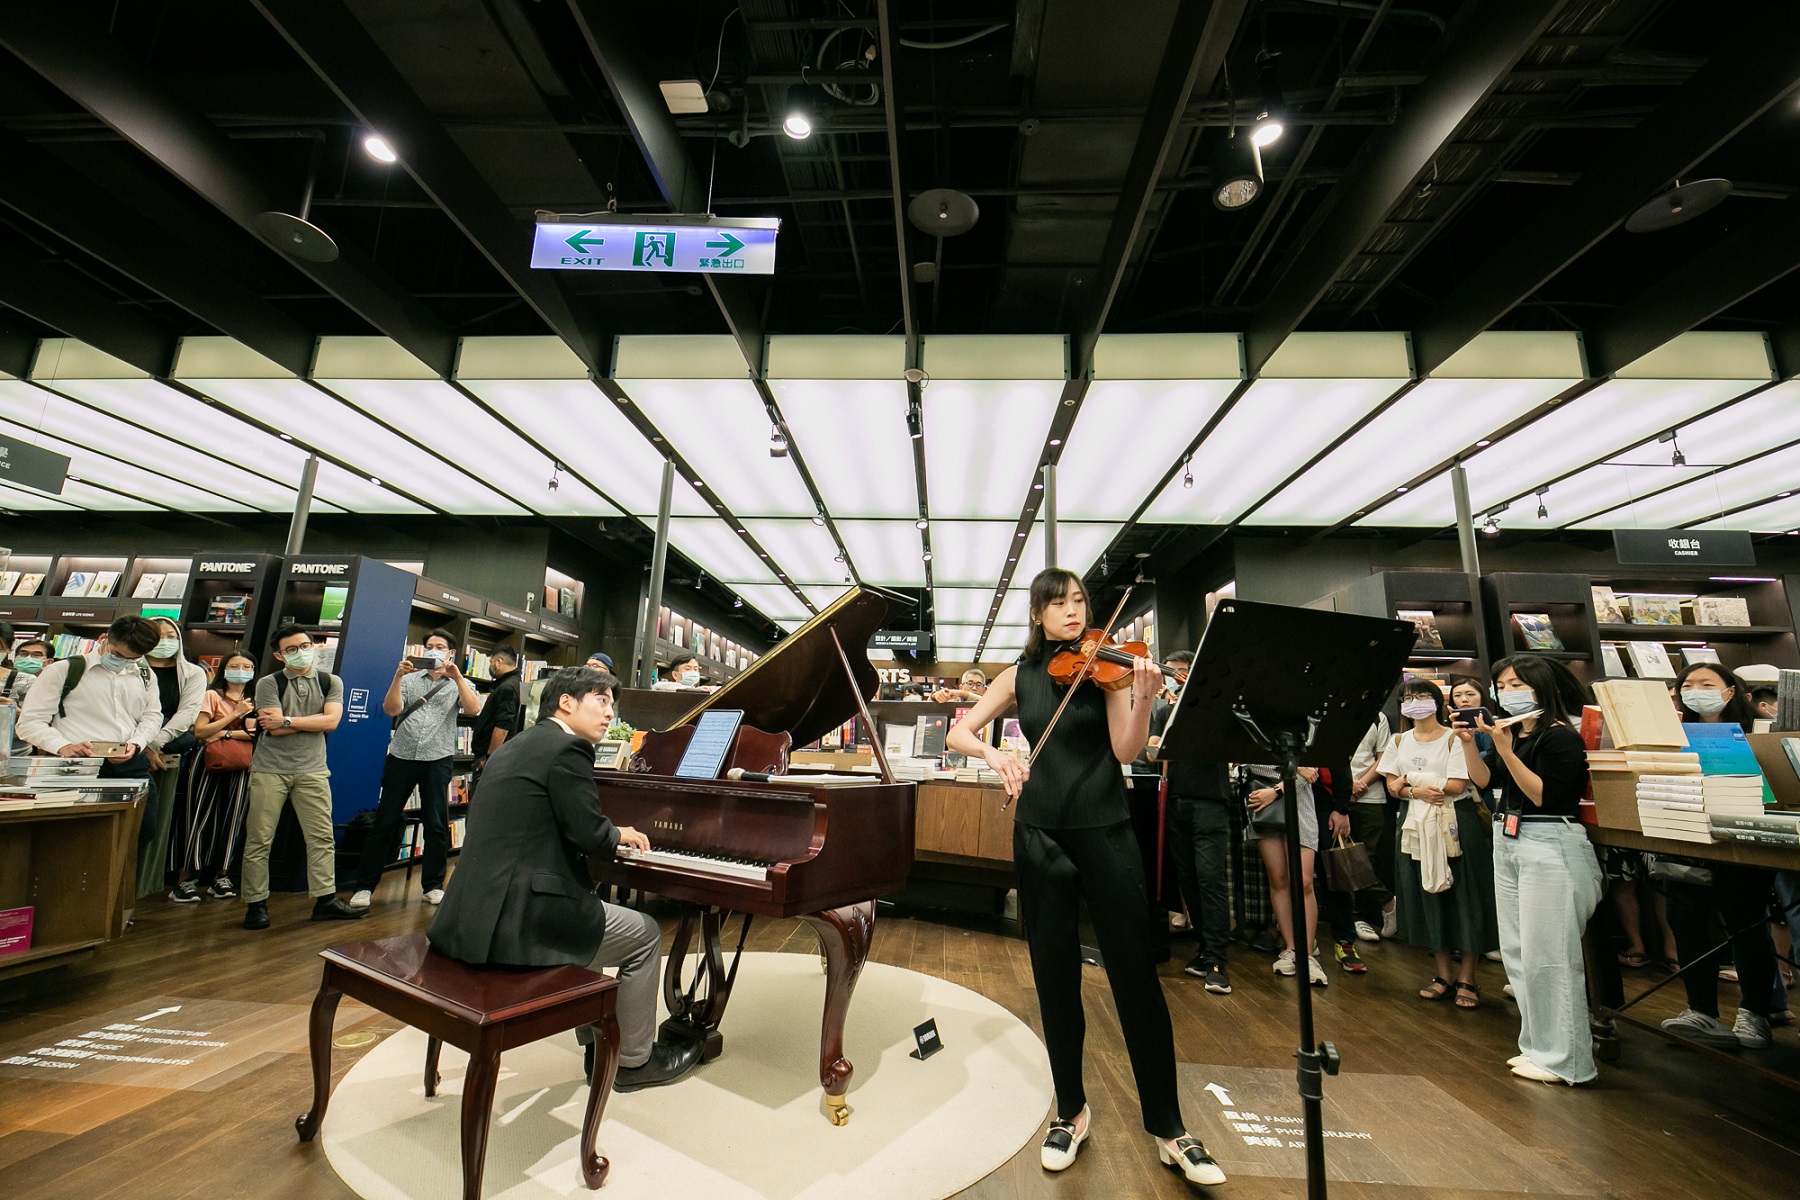 誠品信義店邀請音樂家在每周五、六於書店琴藝空間演奏宮崎駿的《龍貓》、《崖上的波妞》等電影曲目。